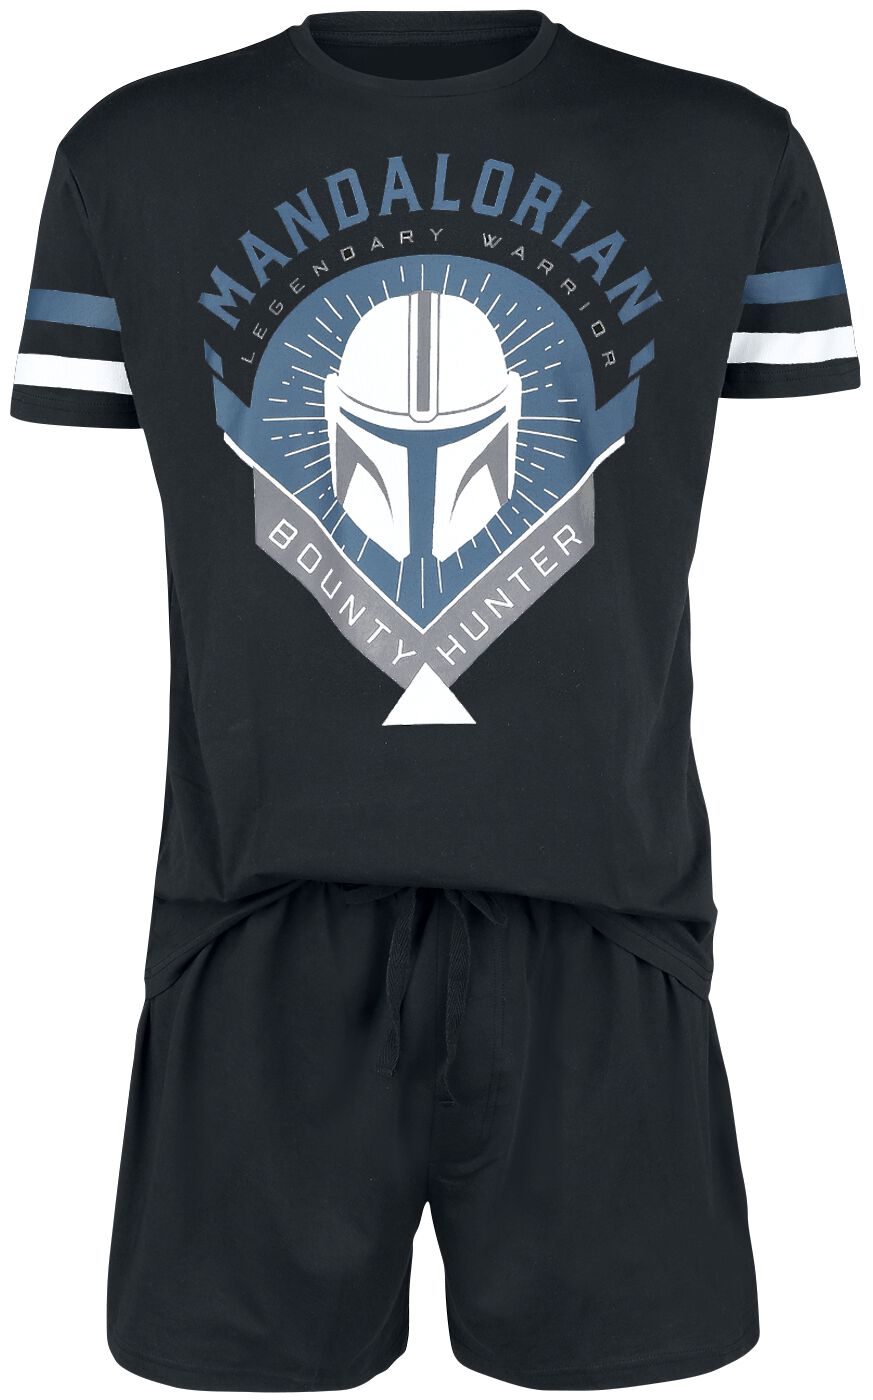 Star Wars Schlafanzug - The Mandalorian - Bounty Hunter - S bis 4XL - für Männer - Größe M - schwarz  - EMP exklusives Merchandise! von Star Wars